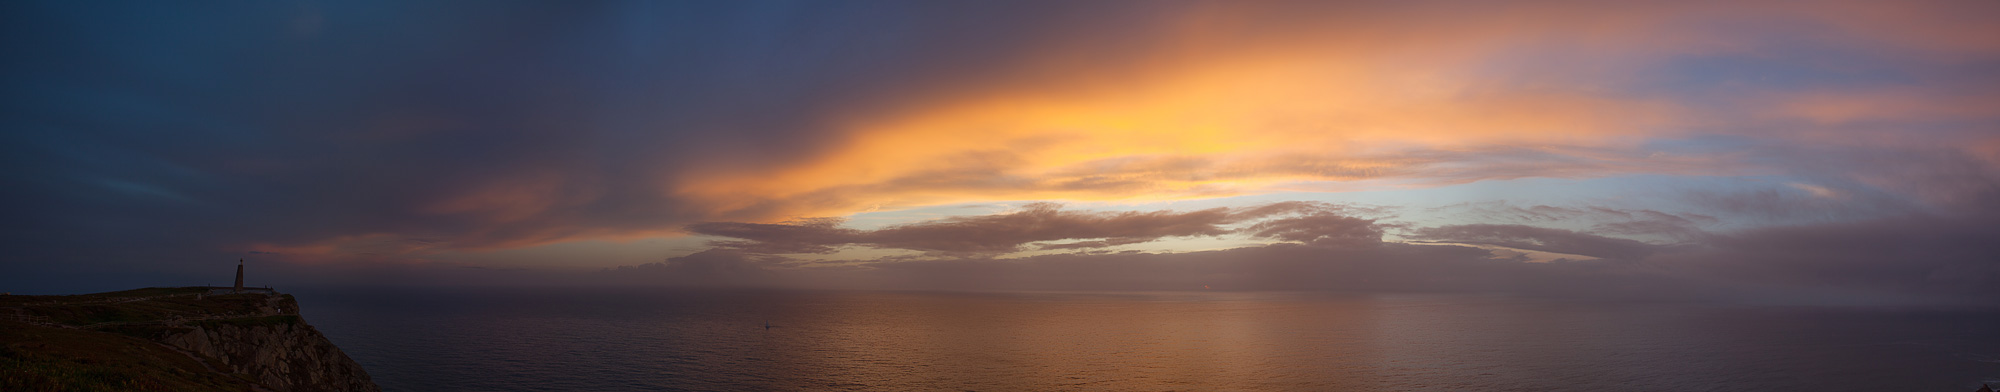 закат над Атлантикой, Cabo da Roca, Portugal Нажмите на изображение, чтобы посмотреть его на полном экране.